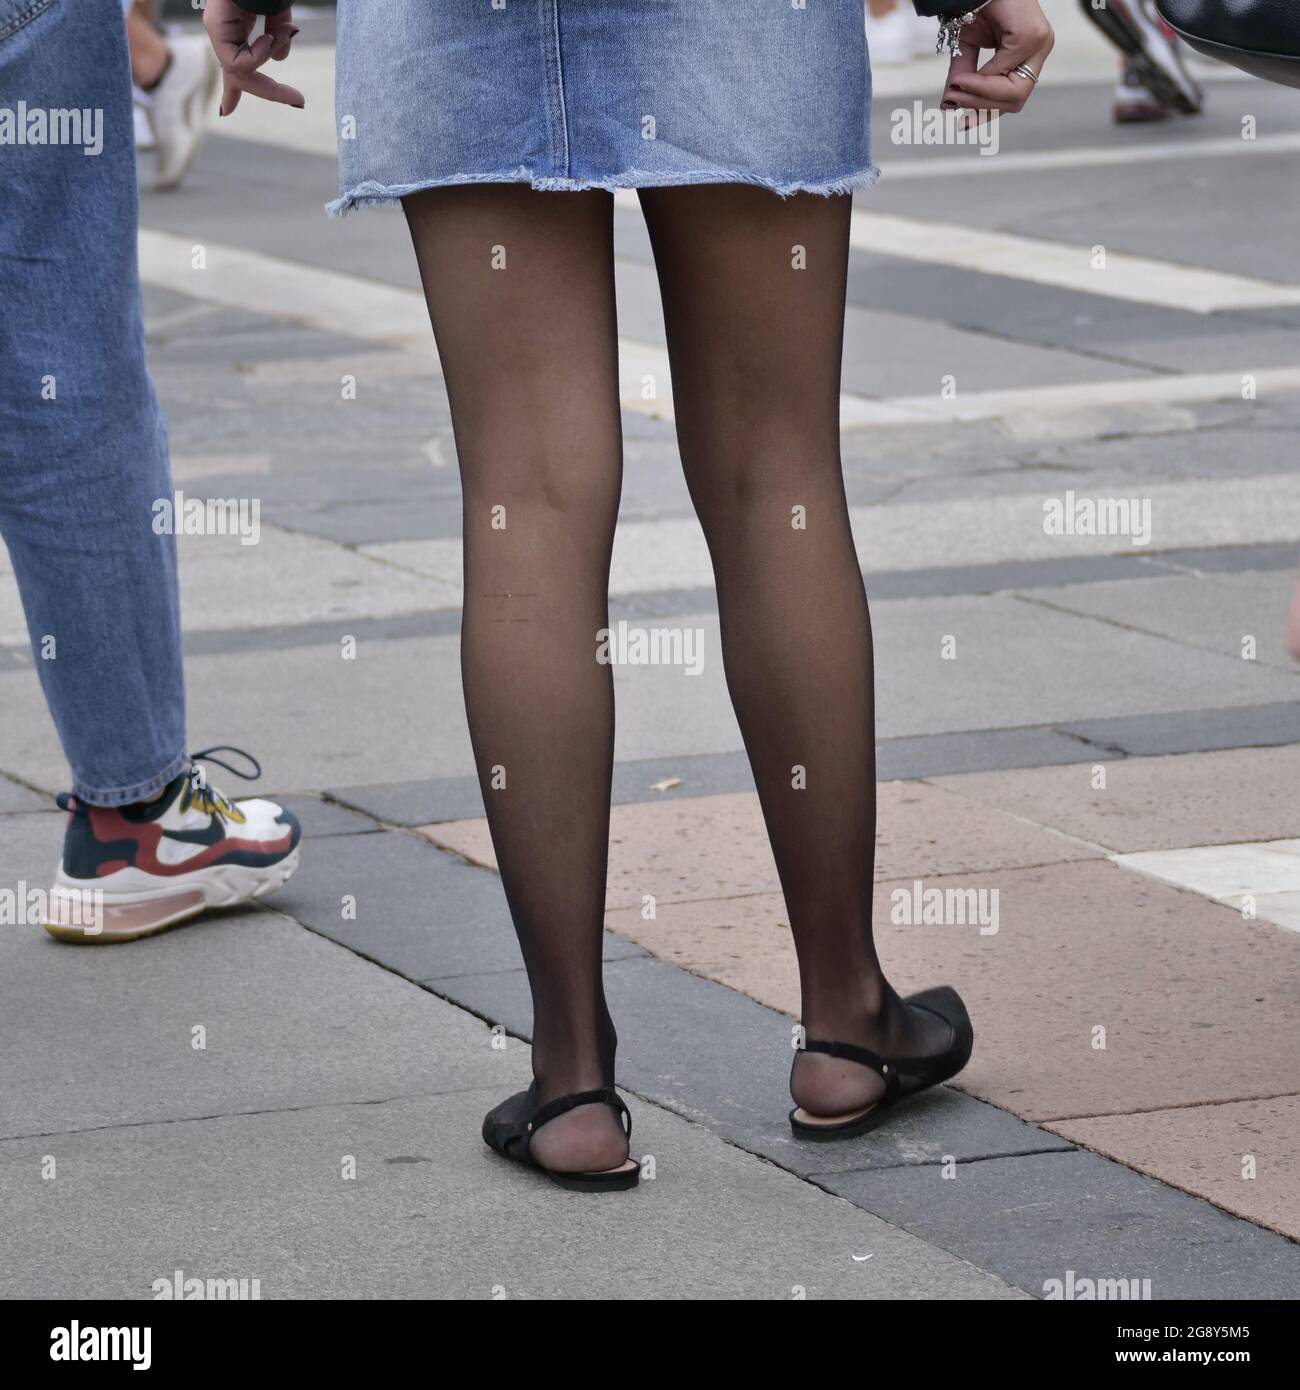 Ragazza in miniskirt e collant nero in piazza Duomo, Milano, Lombardia,  Italia Foto stock - Alamy